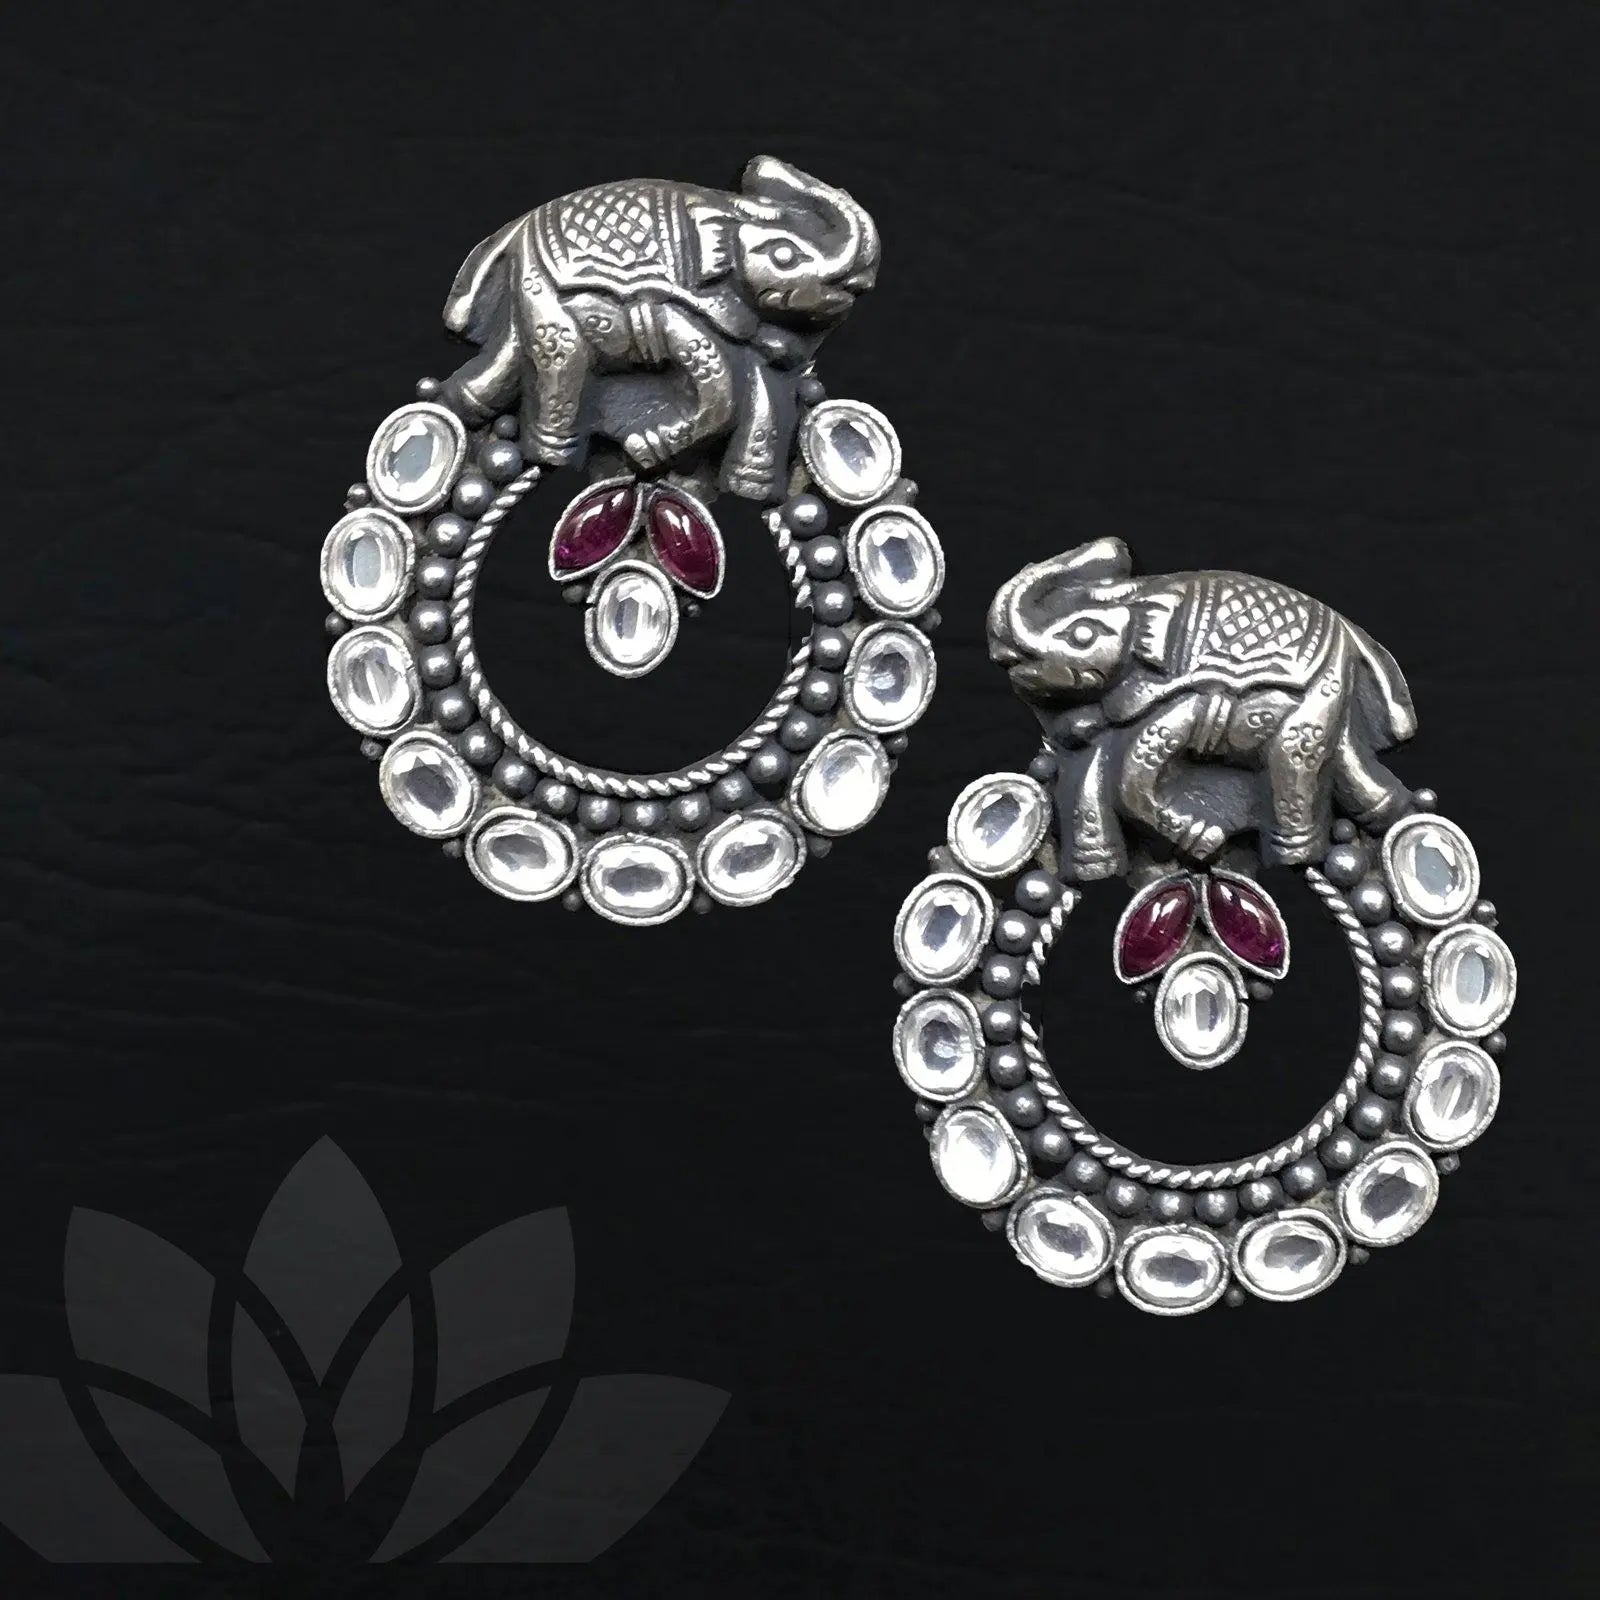 Elephant Silver Earrings